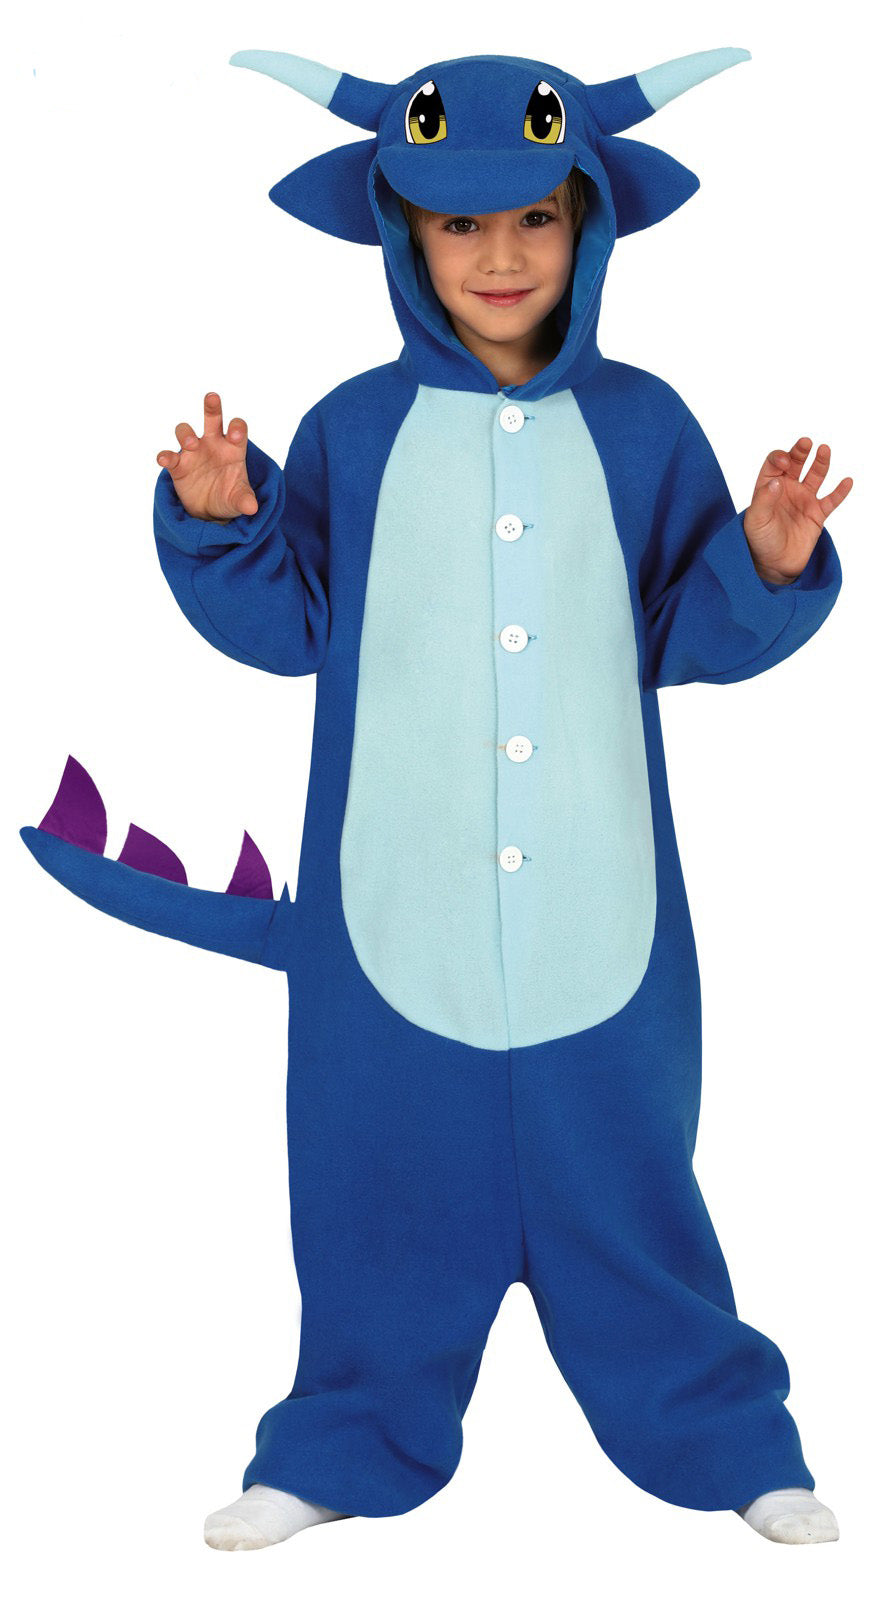 Kid's Dragon fancy dress costume blue.